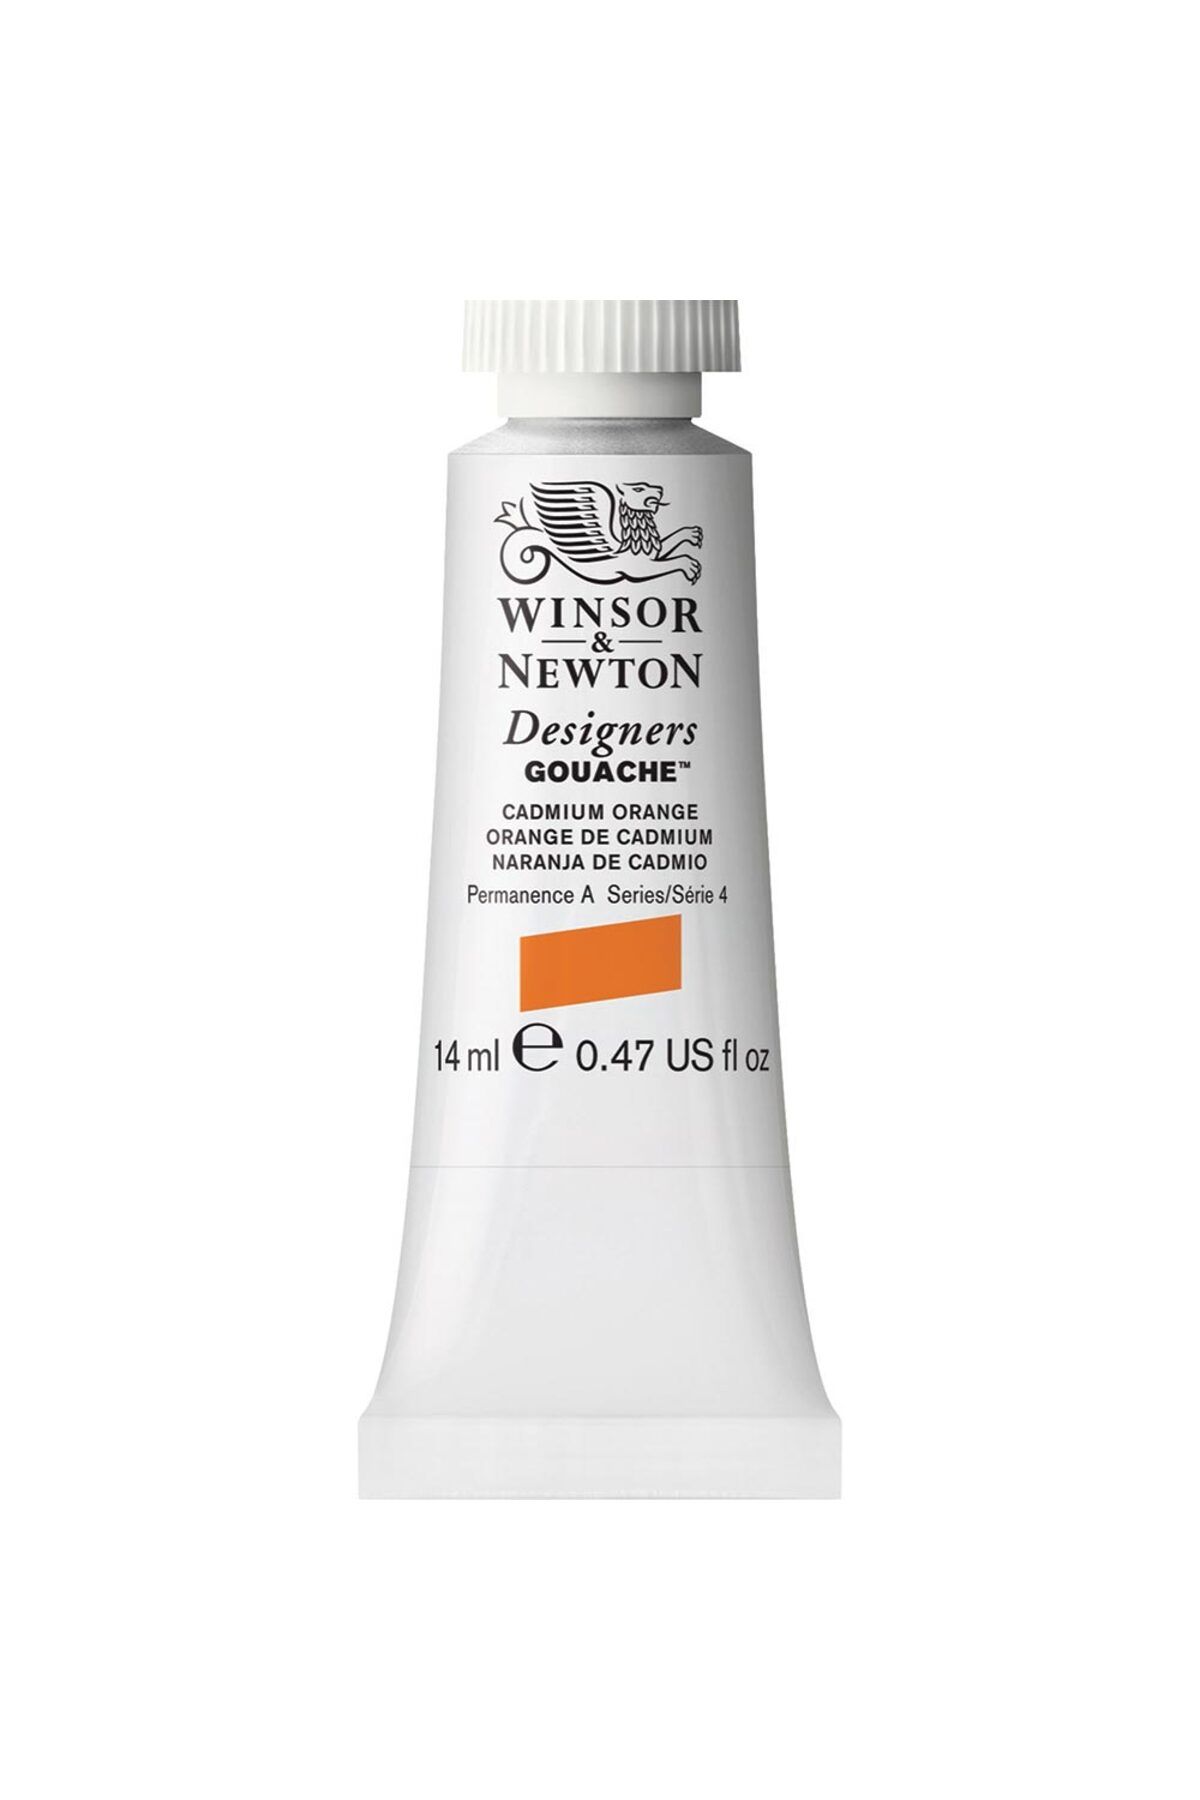 Winsor Newton Designer's Gouache 14ml Cadmium Orange 089 S.4